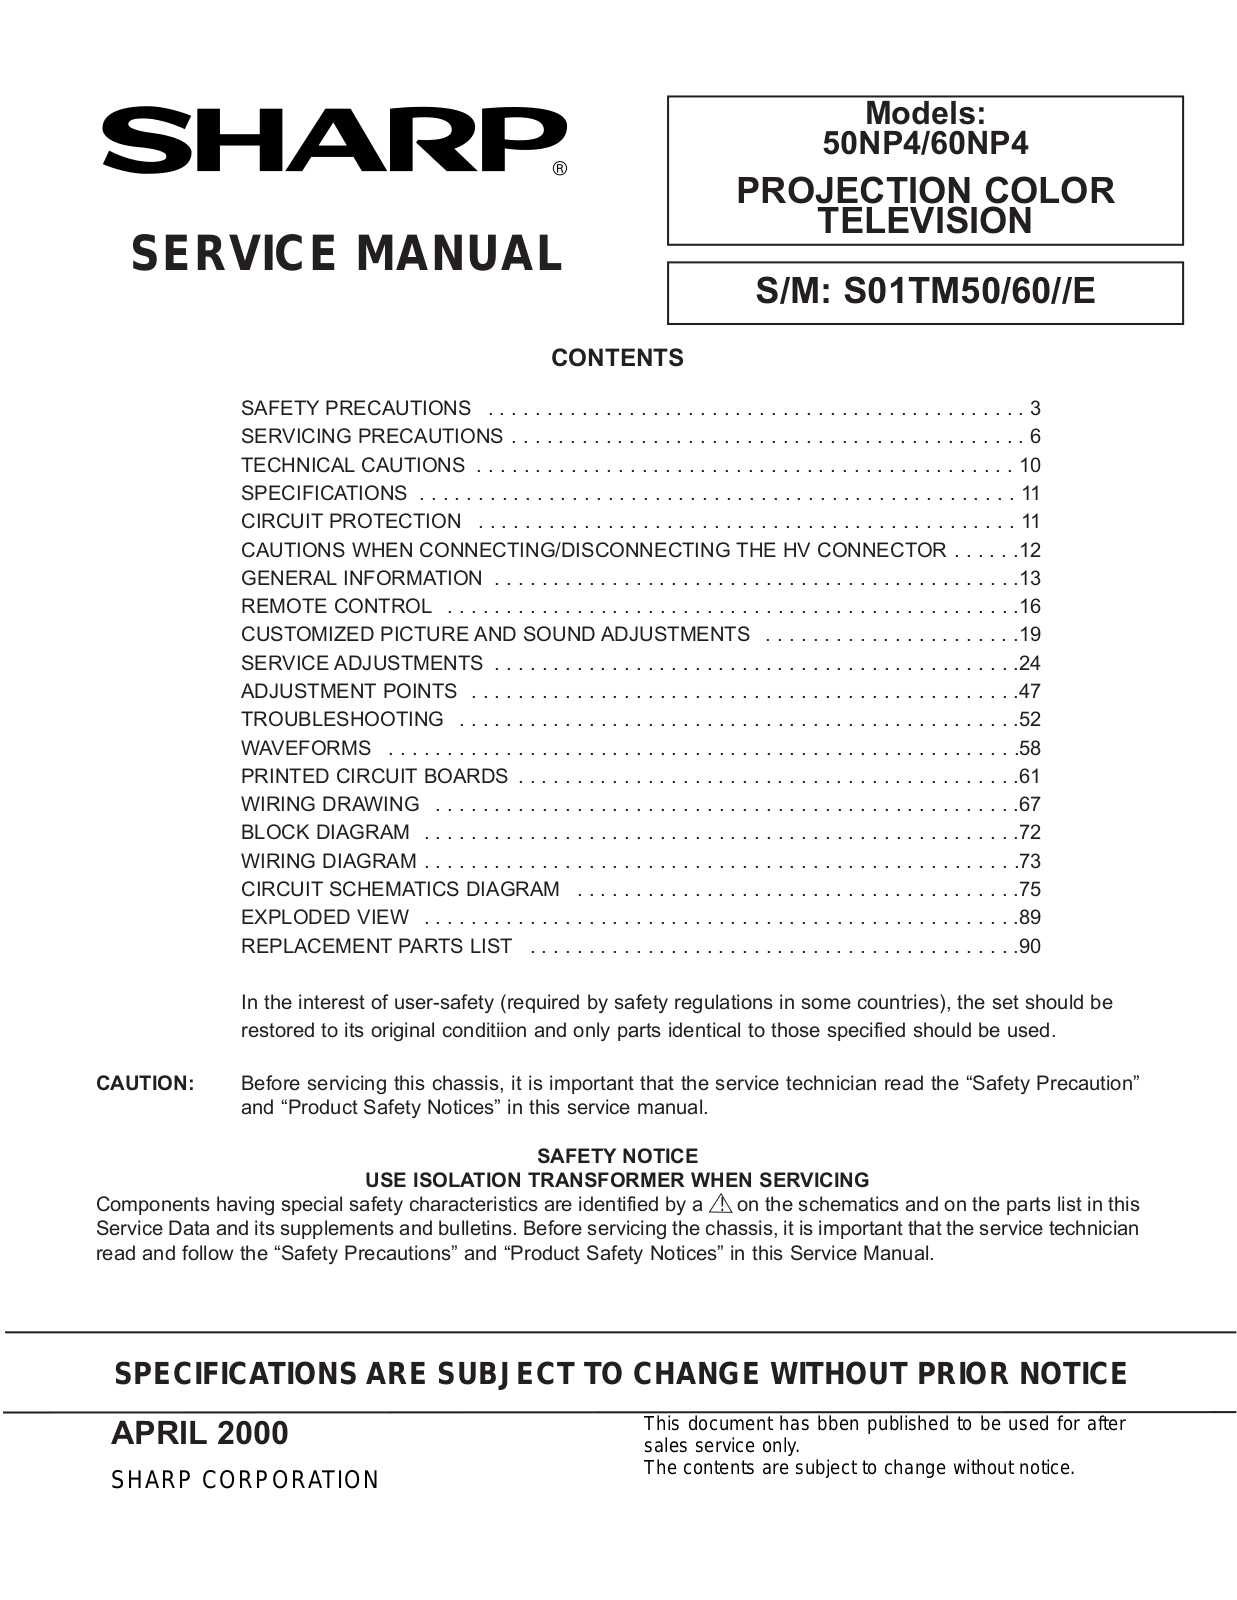 SHARP 60NP4, 50NP4 Service Manual